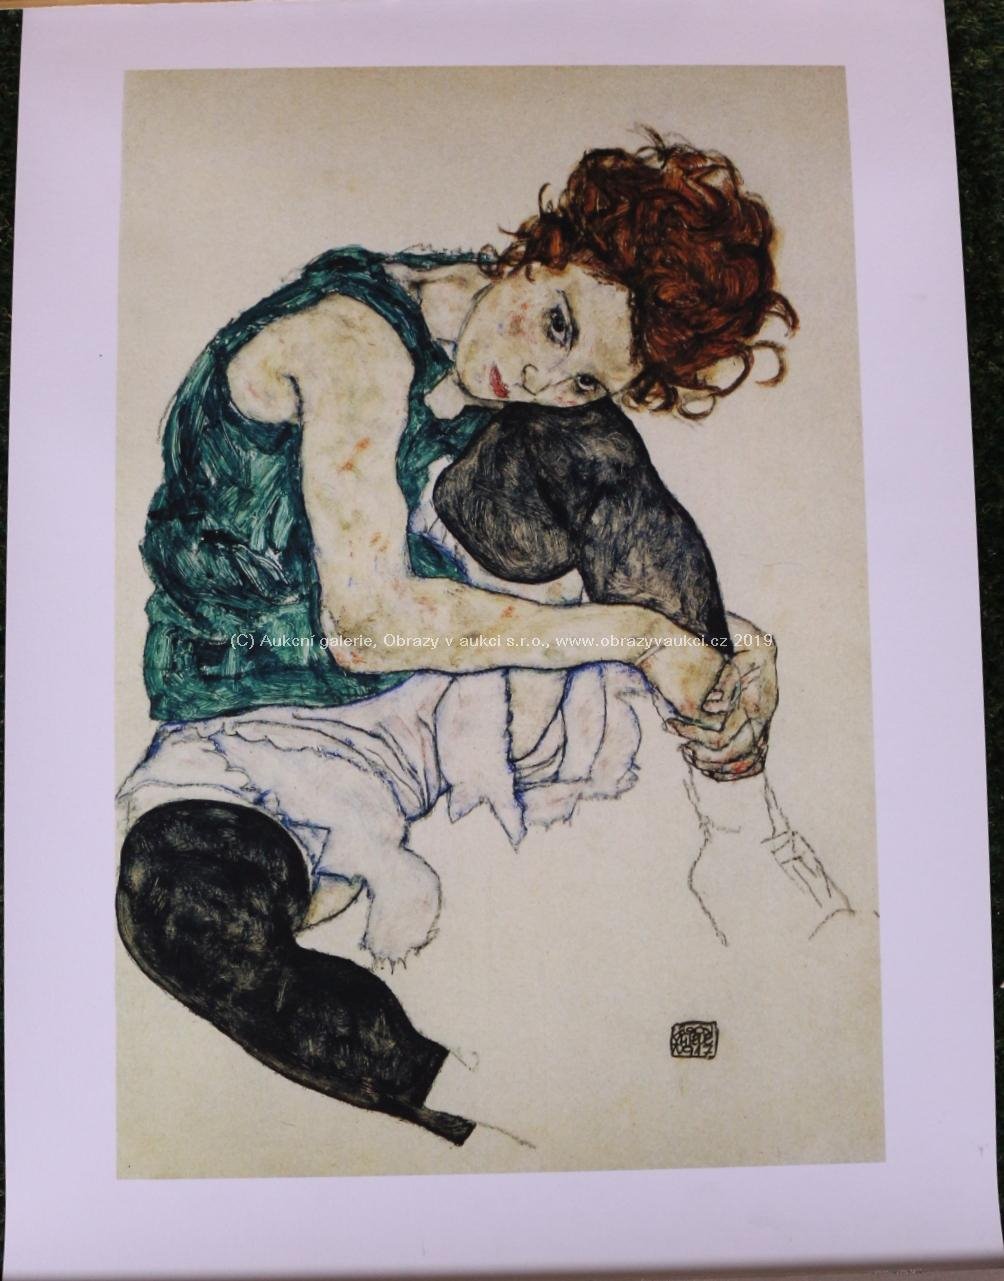 Egon Schiele - Sitzende Frau